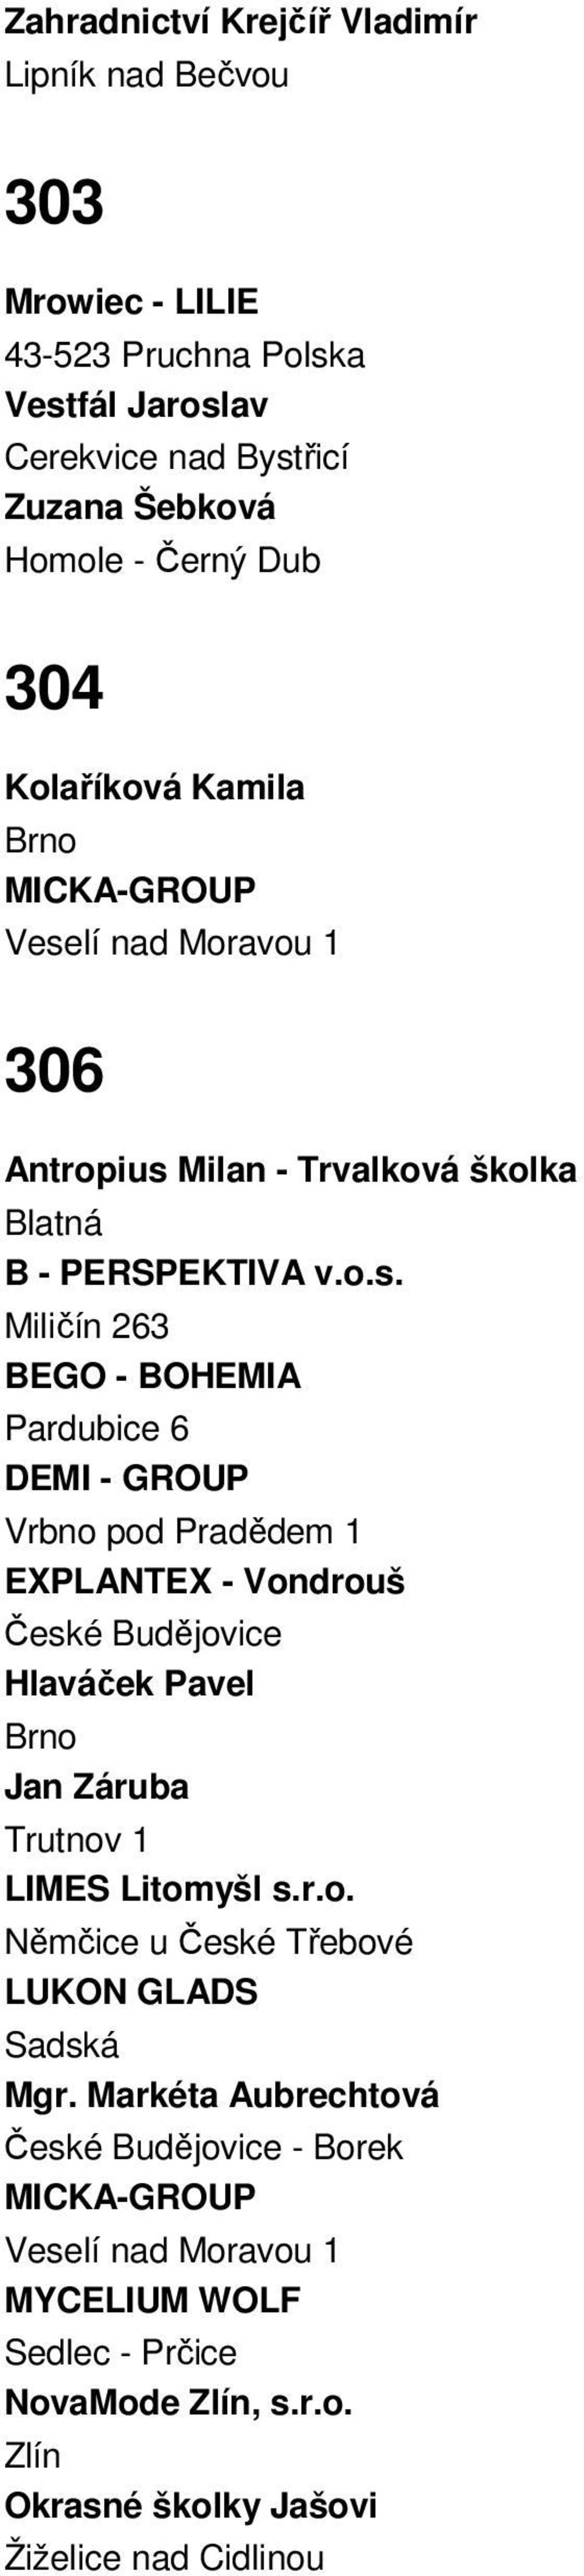 Milan - Trvalková školka Blatná B - PERSPEKTIVA v.o.s.